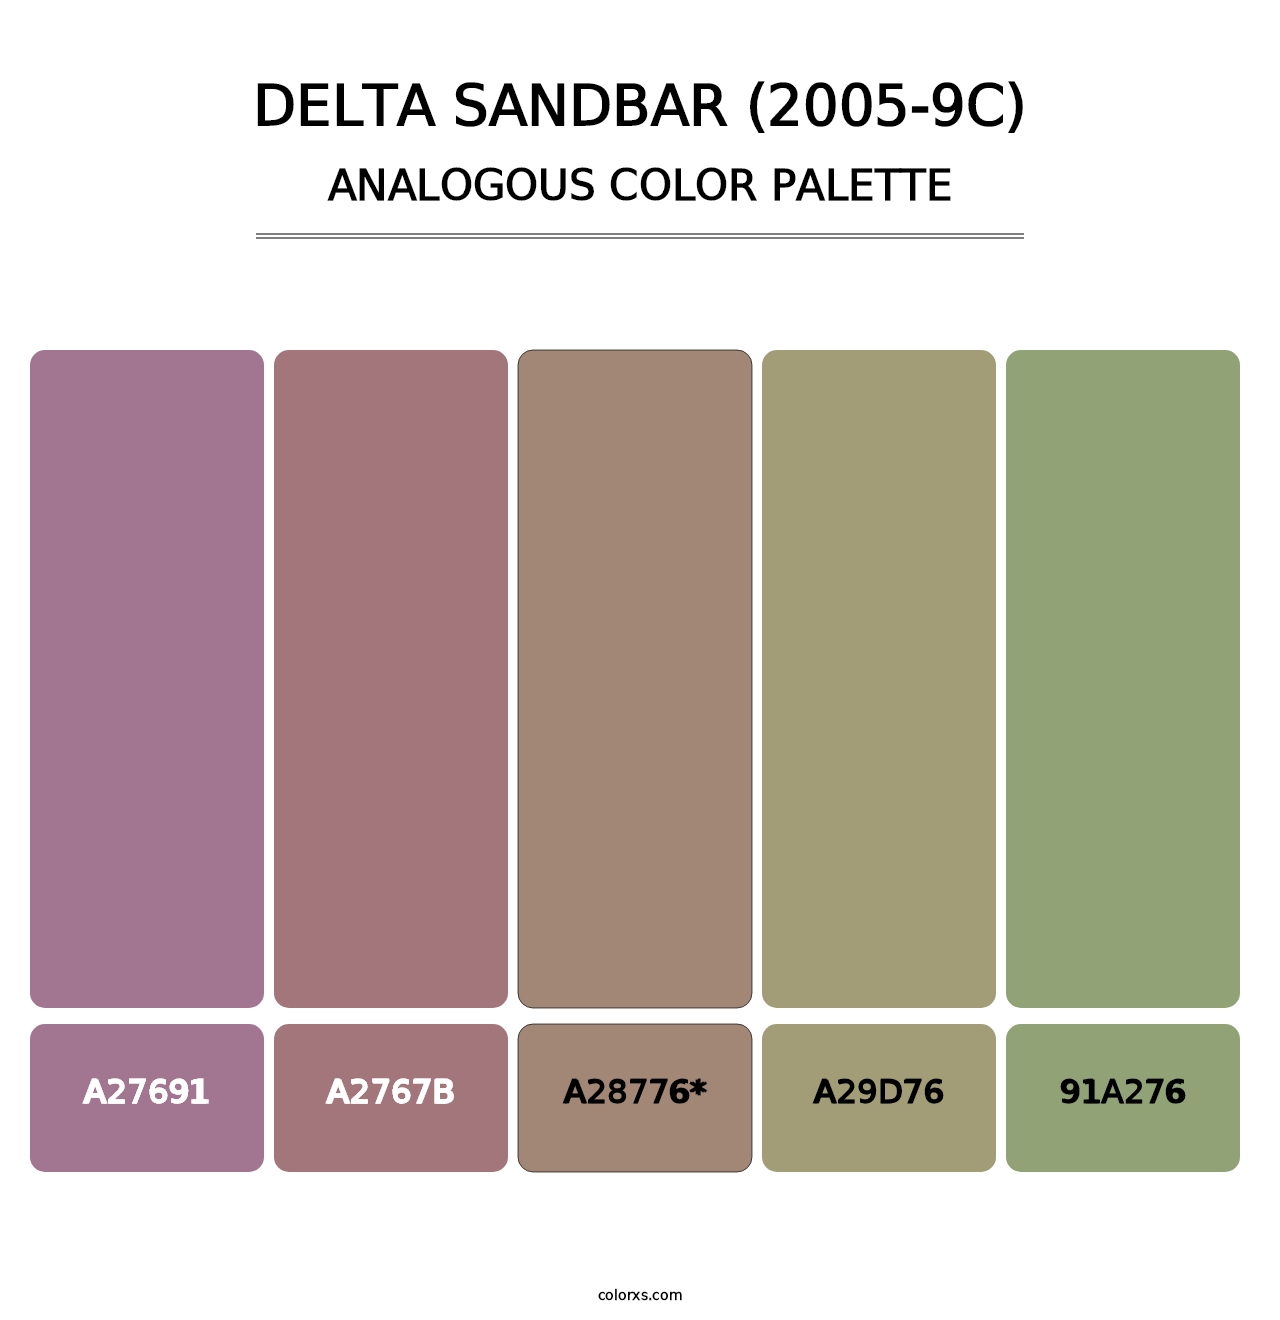 Delta Sandbar (2005-9C) - Analogous Color Palette